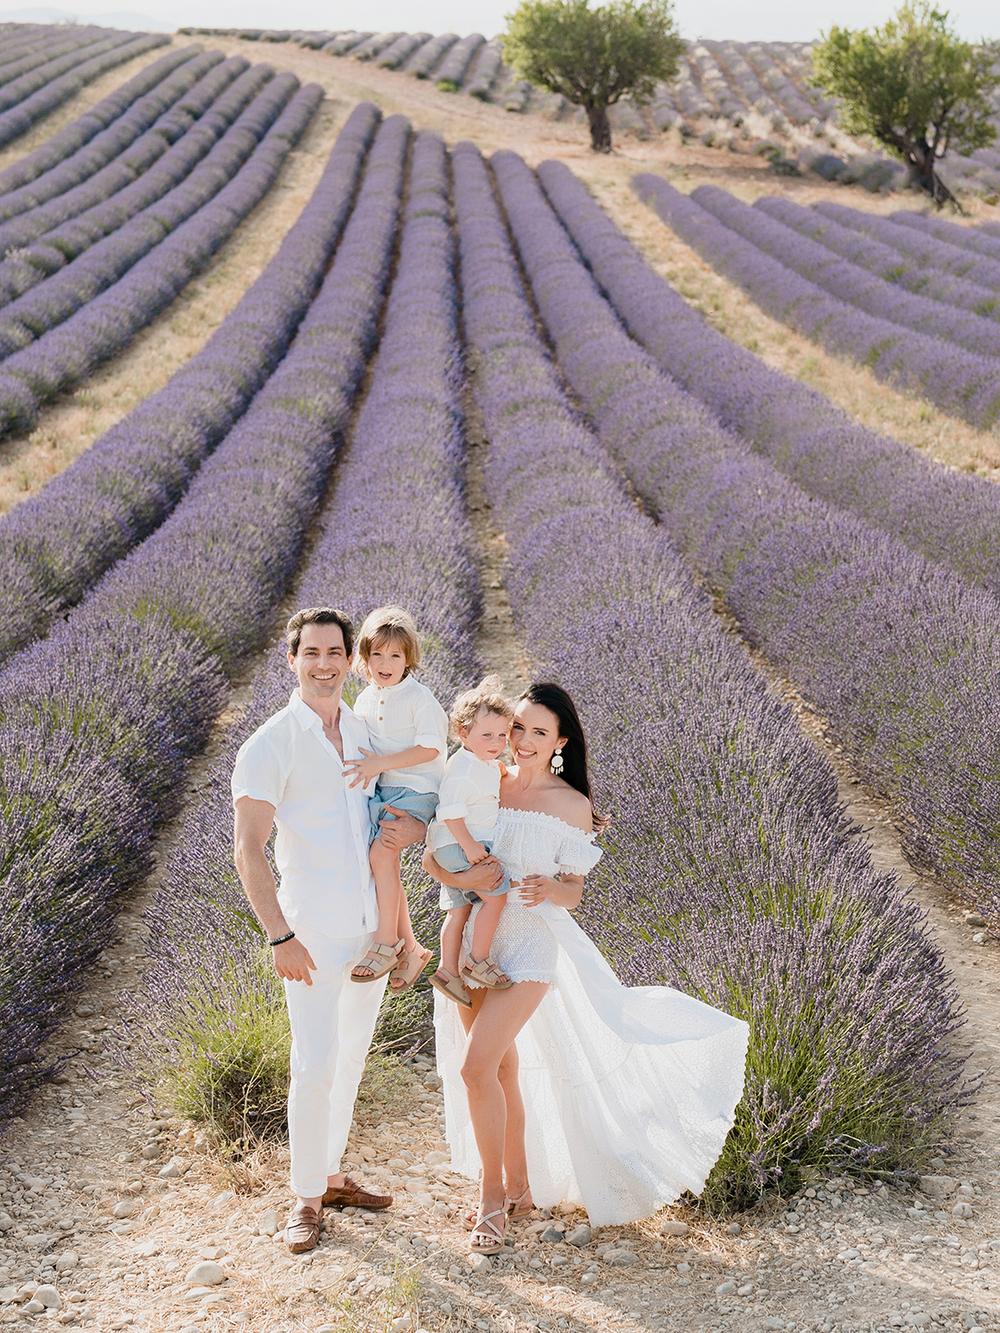 Provence Family Trip. Lavande fields, Gorge du Verdon, Moustier Sainte Marie